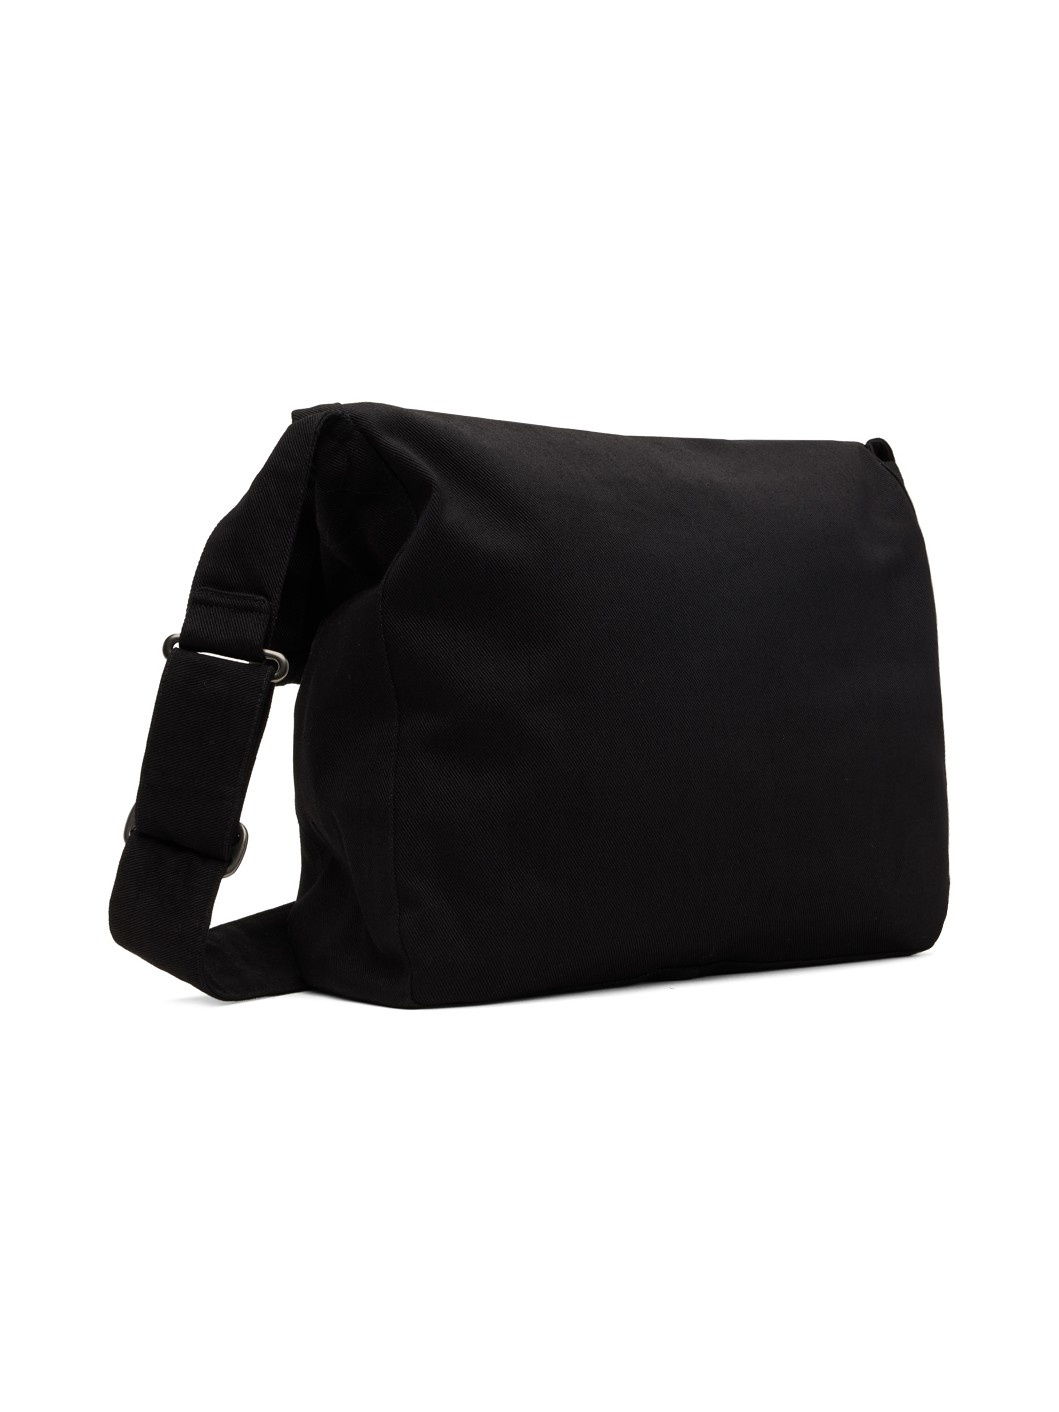 Black Sling Bag - 3